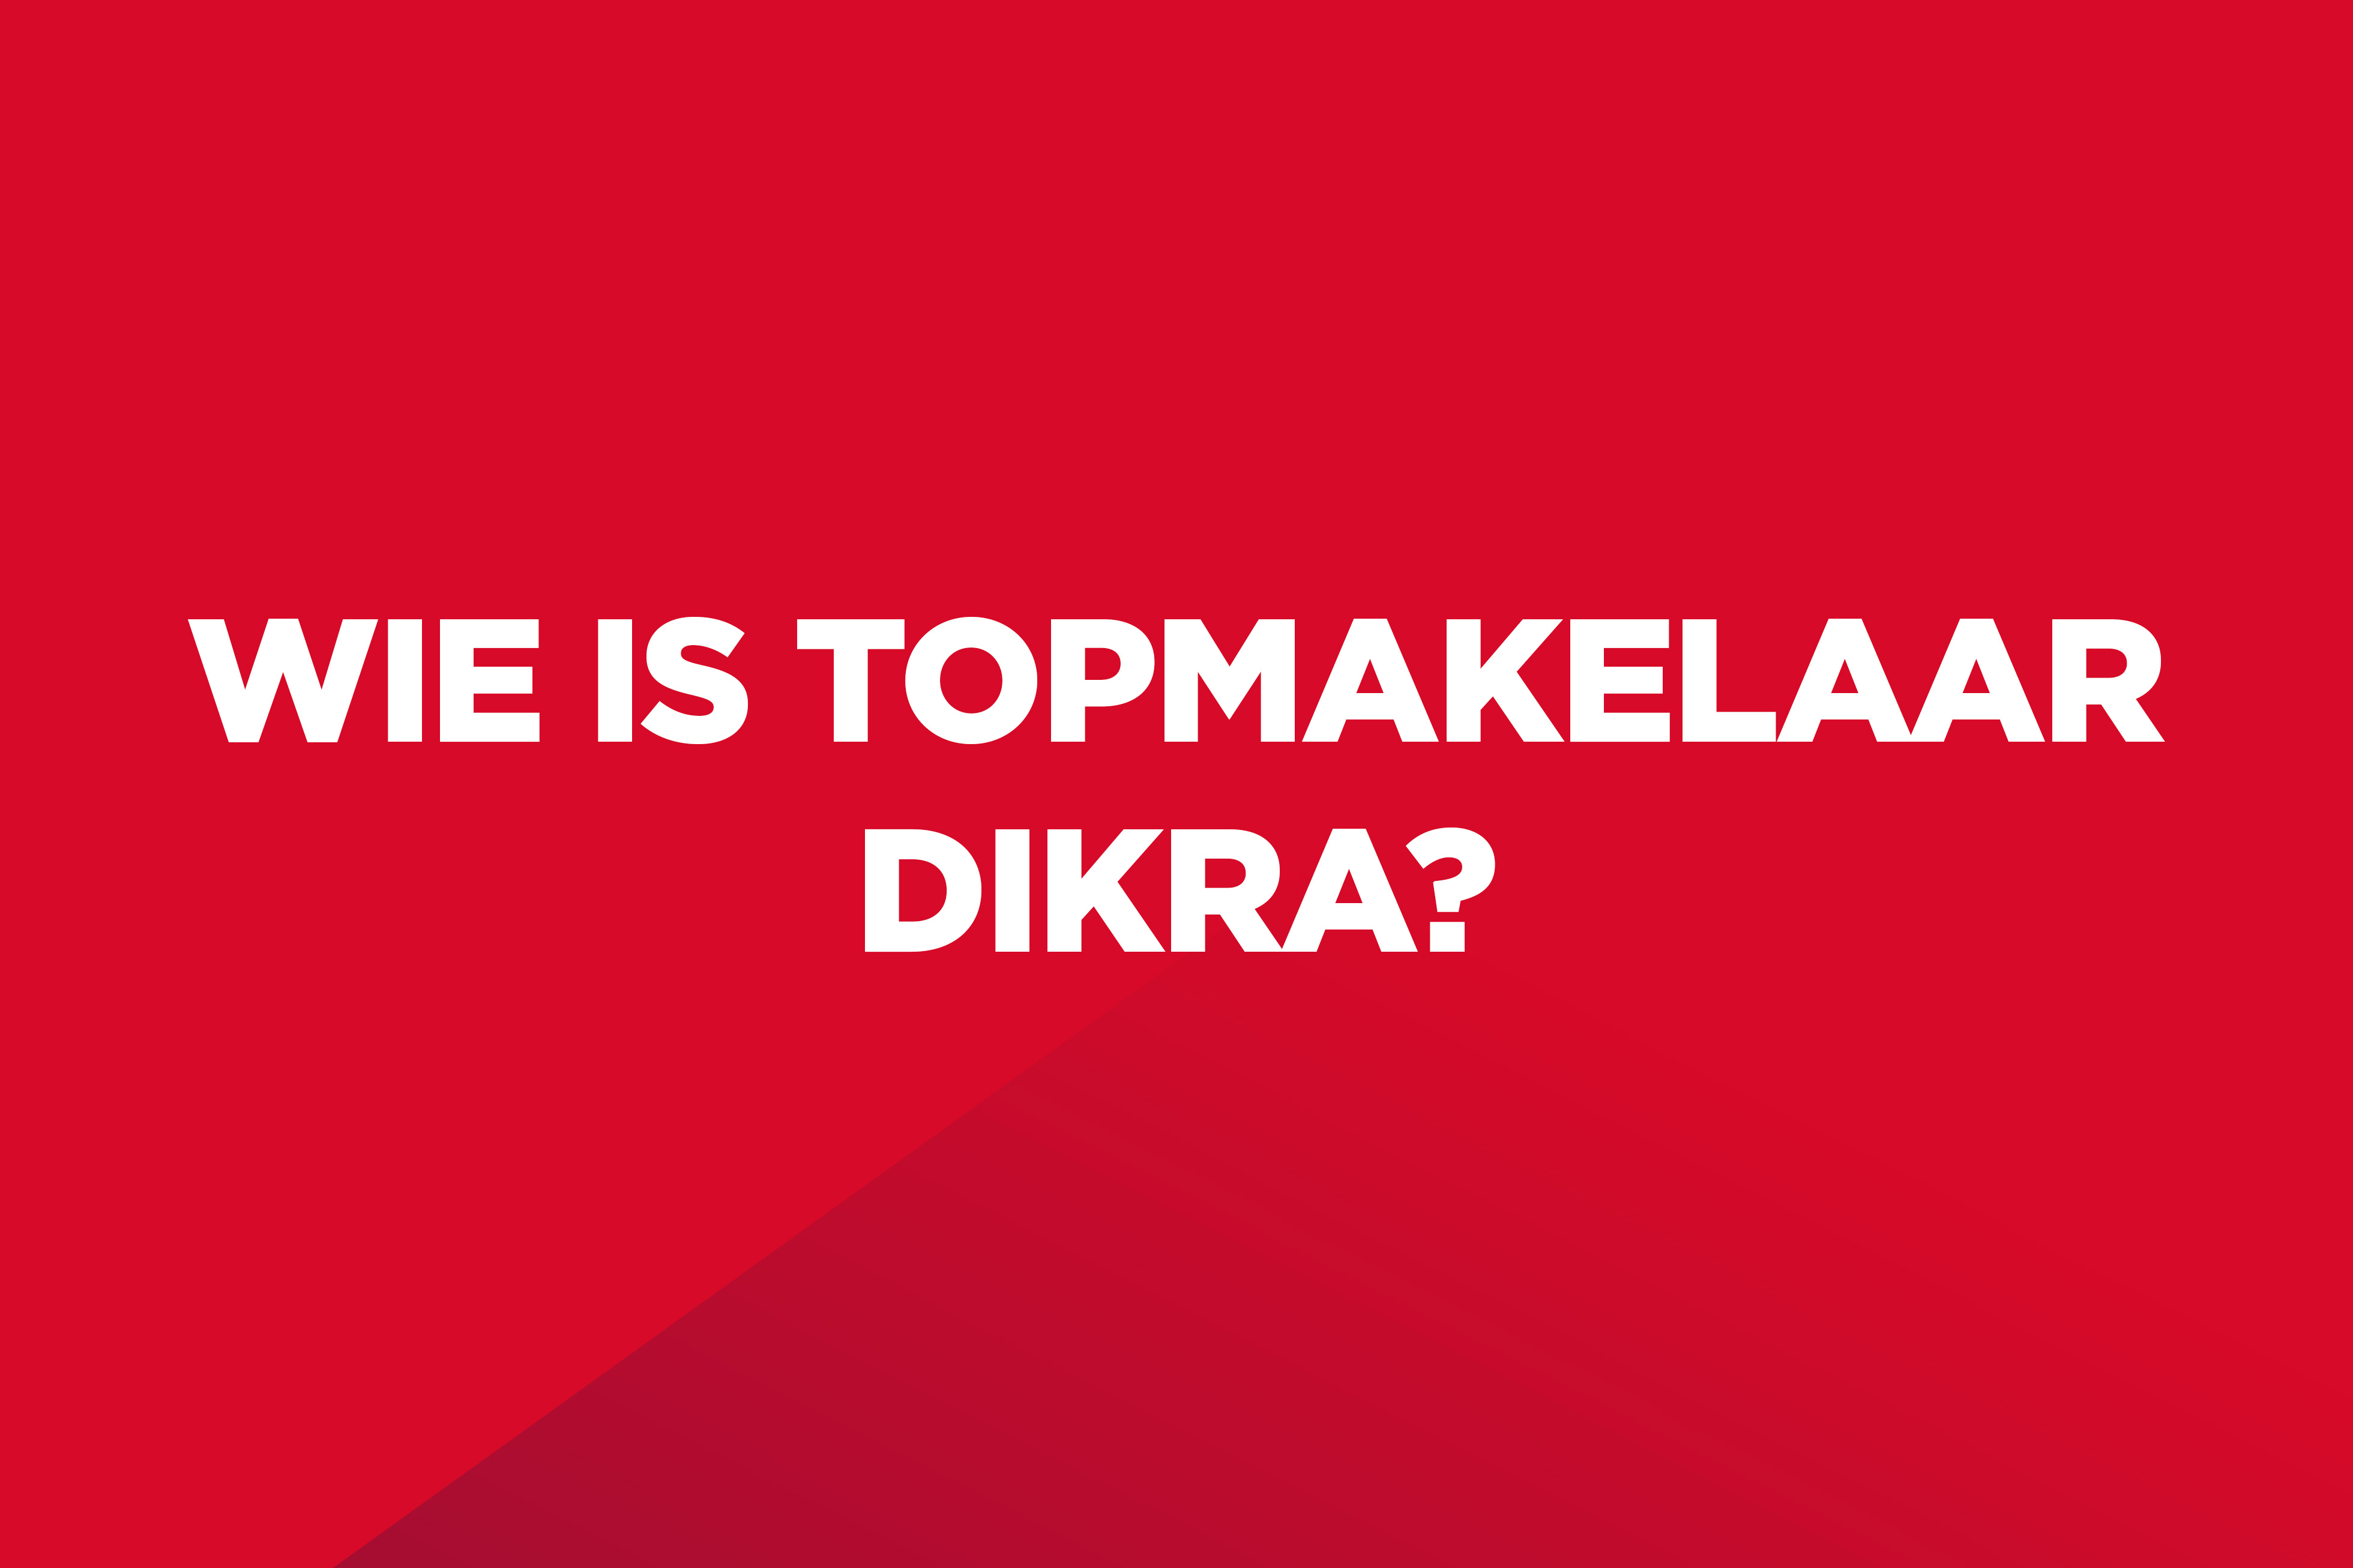 Dit is een rood kleurvlak met witte tekst op: "Wie is Topmakelaar Dikra?".